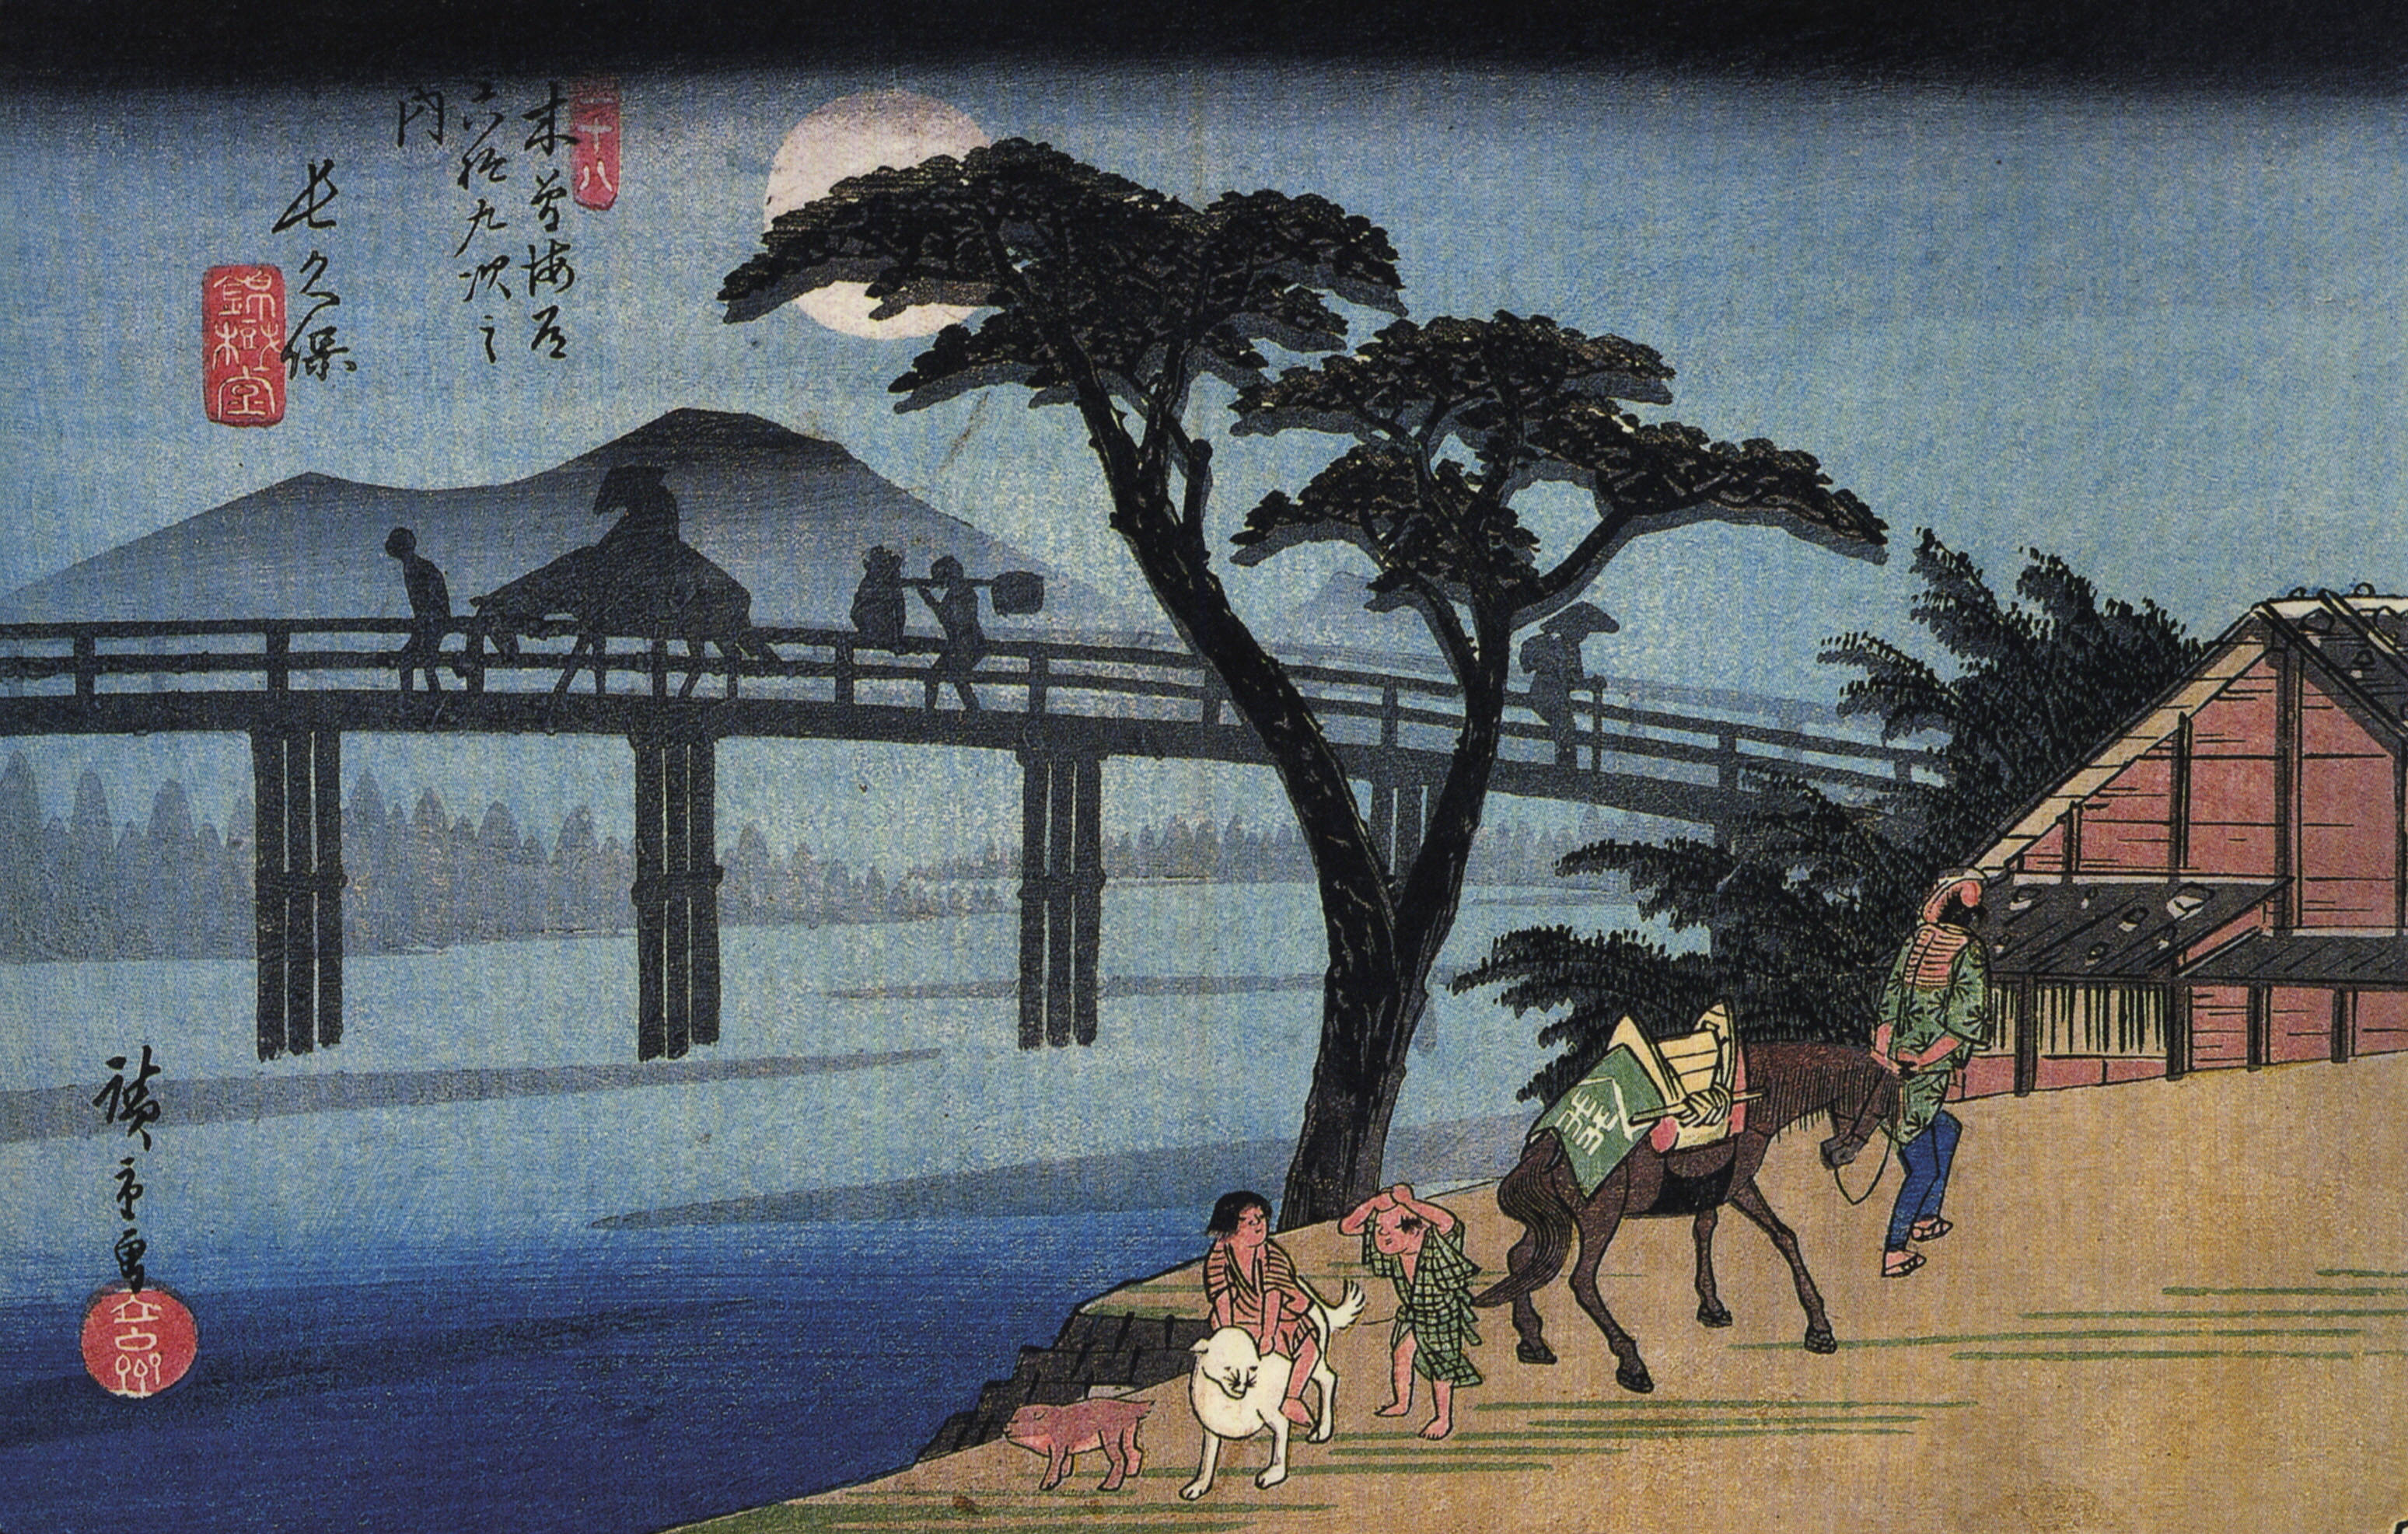 Uomo a cavallo che attraversa un ponte by  Hiroshige - 1834-1842 - 18.3 x 25.6 cm 